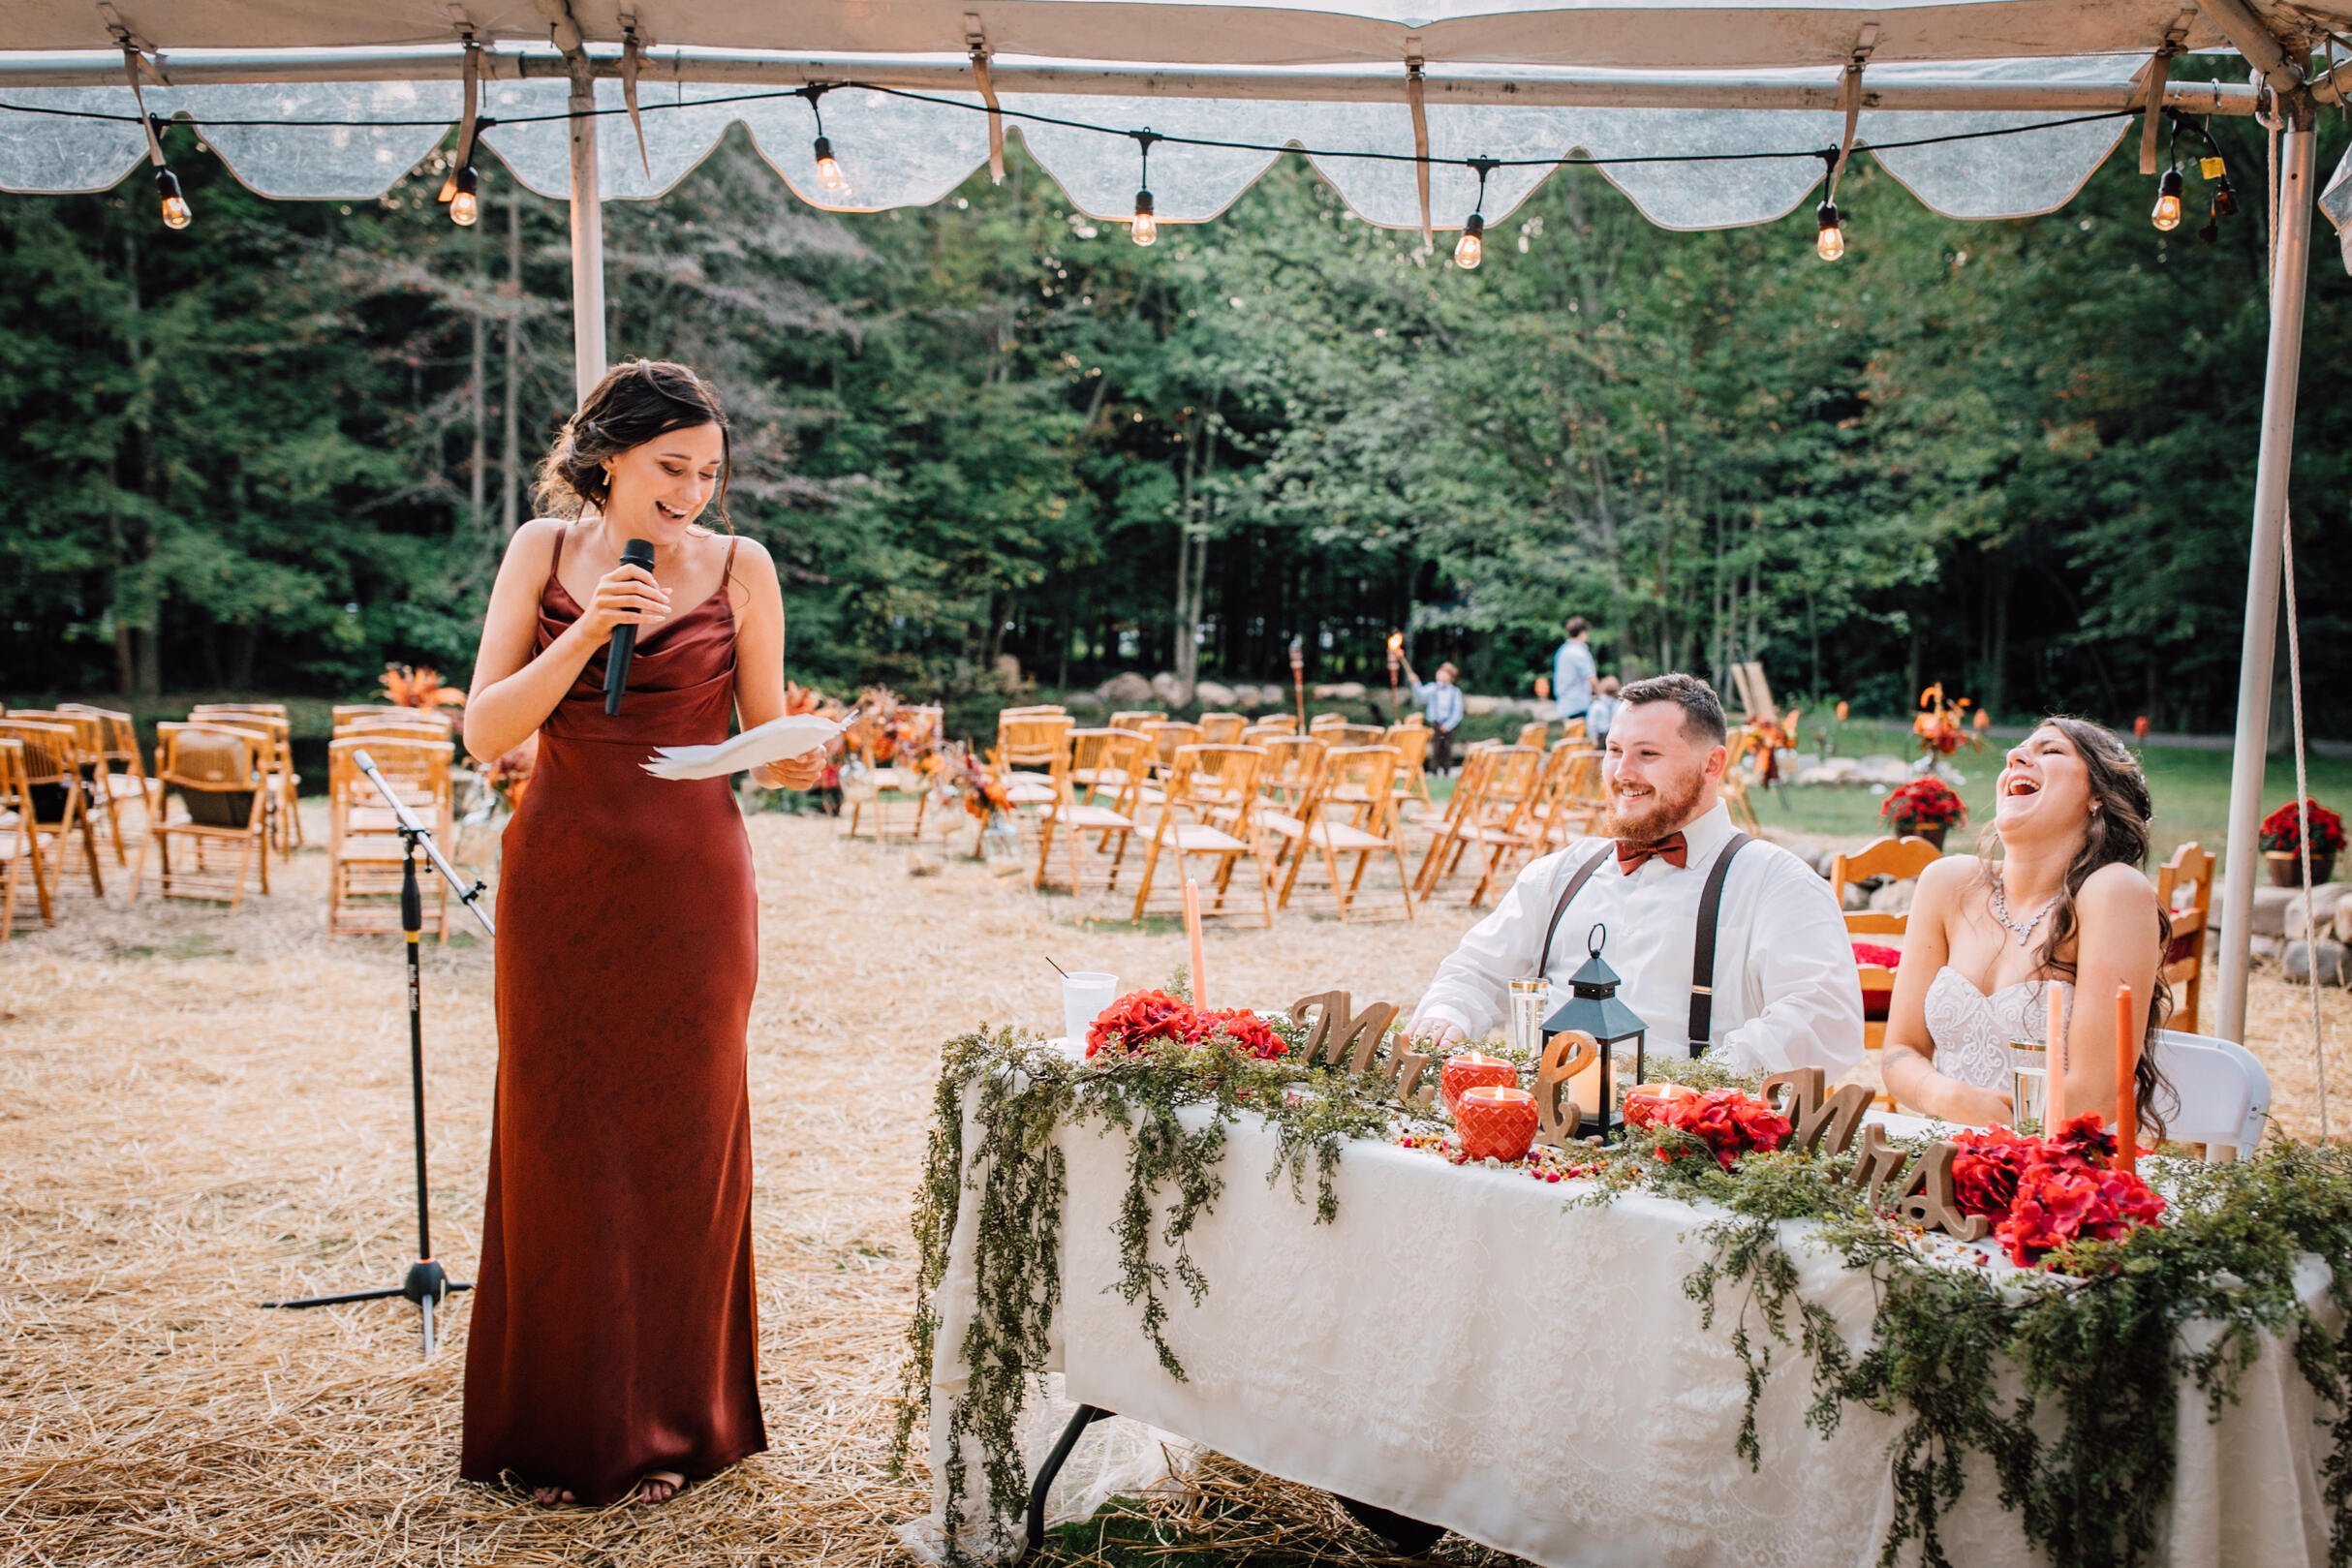  The maid of honor gives at toast at a backyard wedding 